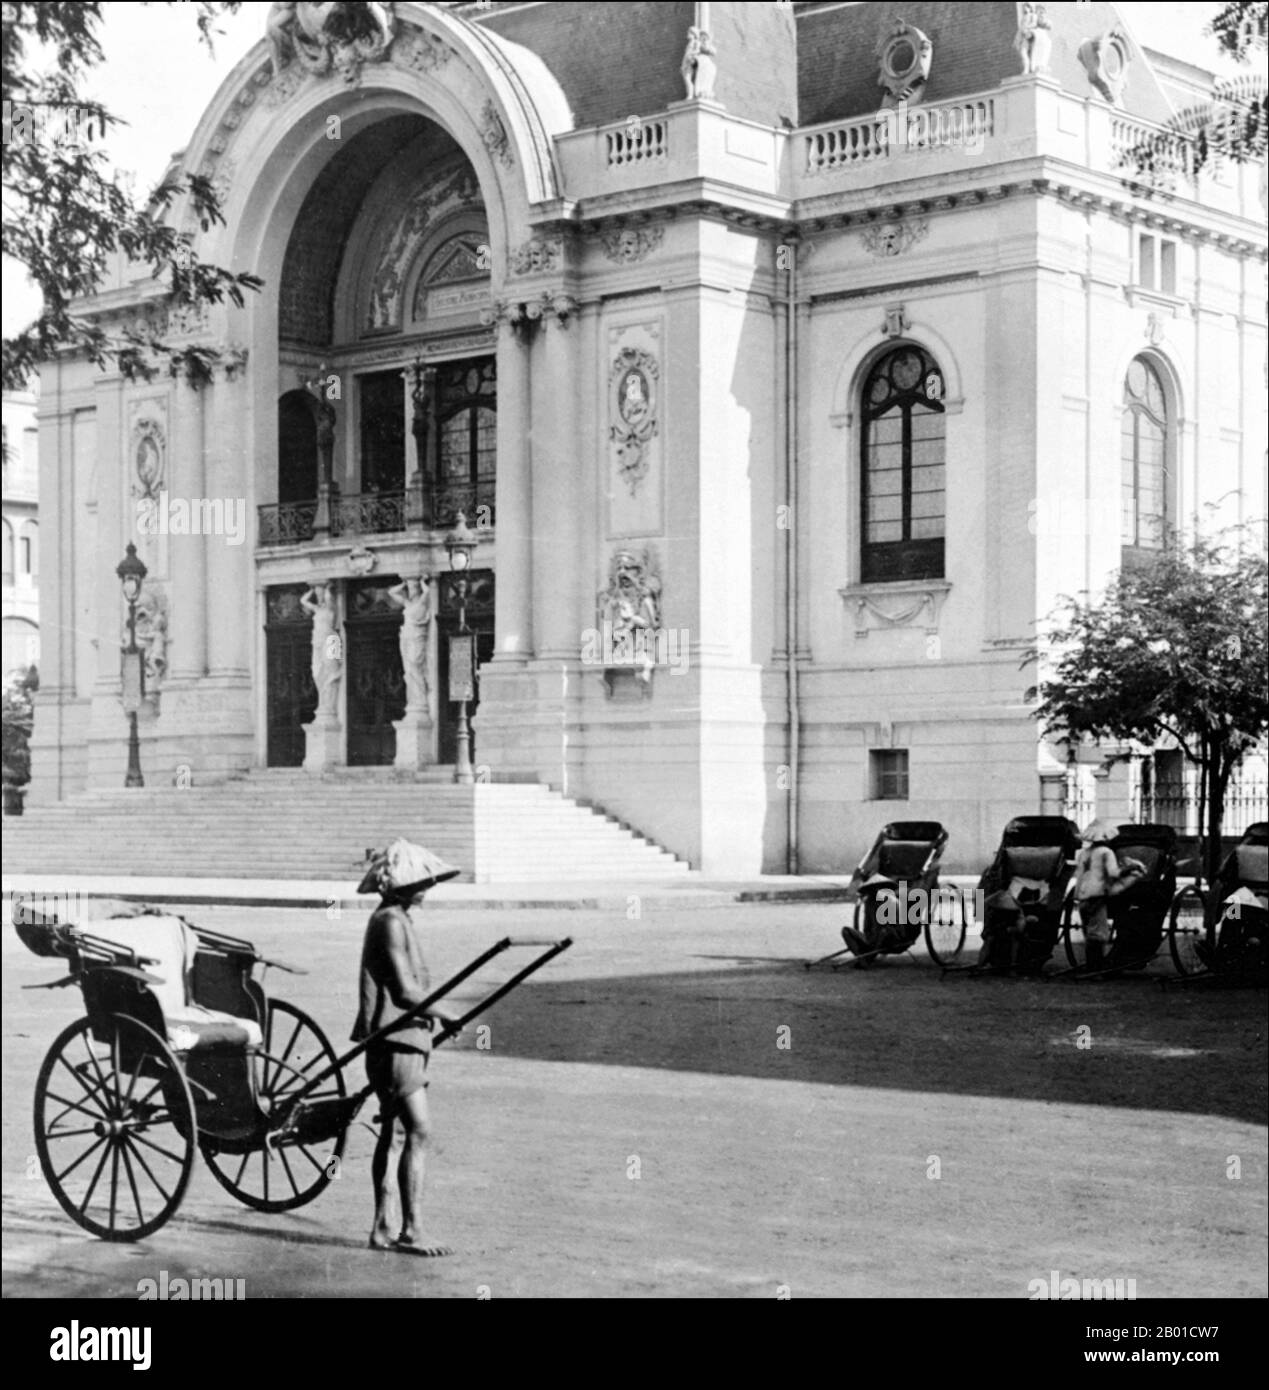 Vietnam: Rikscha vor dem Beaux-Arts Municipal Theatre, auch Saigon Opera House genannt, Saigon, 1915. Das Saigon Opera House (vietnamesisch: Thành phố Hồ Chí Minh), ein Opernhaus in Ho-Chi-Minh-Stadt, Vietnam, ist ein Beispiel für die französische Kolonialarchitektur in Vietnam. Das 1897 vom französischen Architekten Ferret Eugene erbaute Gebäude mit 800 Sitzplätzen wurde nach 1956 als Sitz der Unterhausversammlung von Südvietnam genutzt. Erst 1975 wurde es wieder als Theater genutzt und 1995 restauriert. Stockfoto